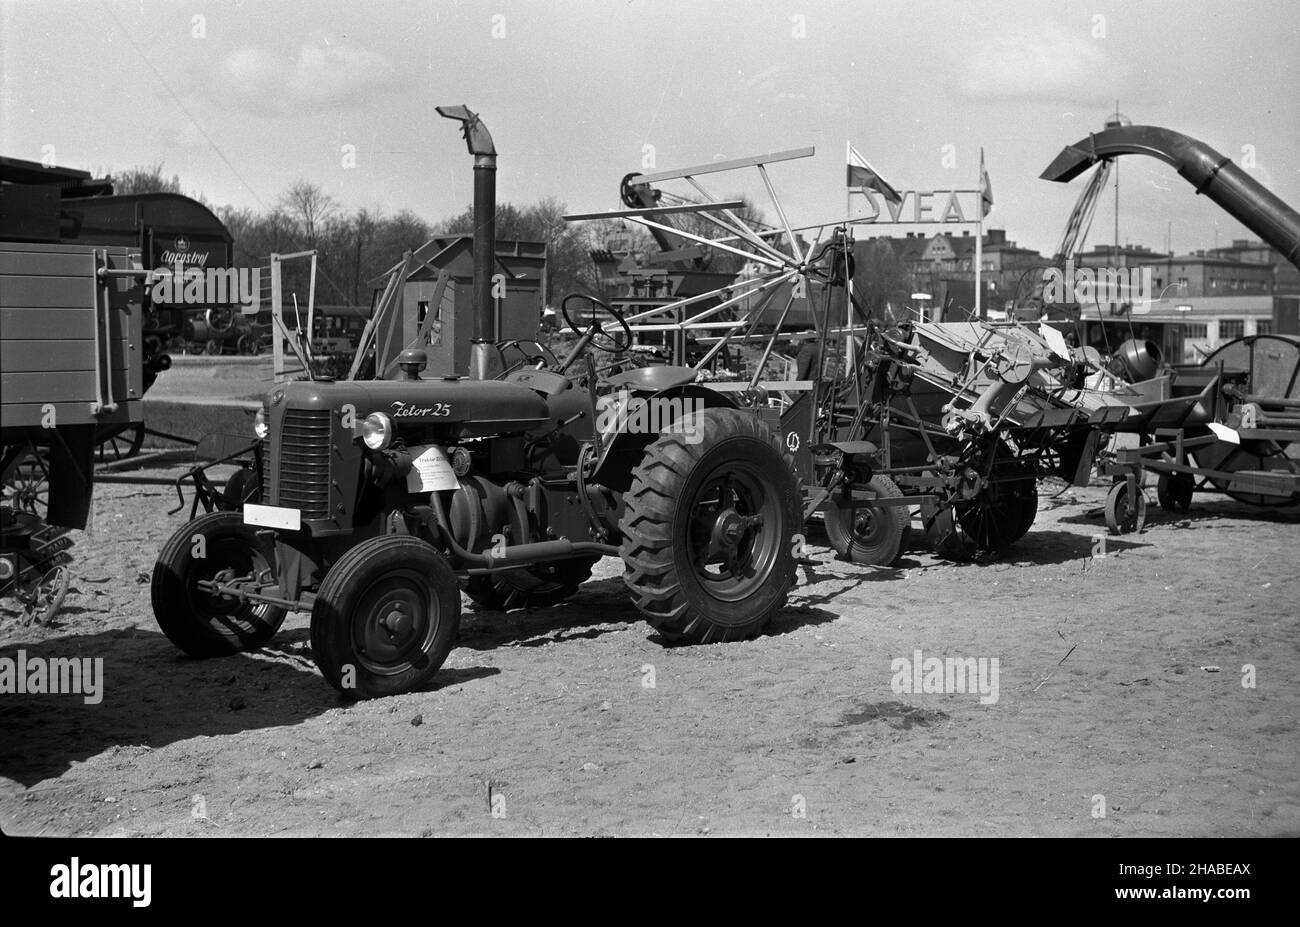 Poznañ, 1949-04-23. XXII Miêdzynarodowe Targi Poznañskie (23 IV-10 V). Nz. wystawa maszyn rolniczych. Na pierwszym planie traktor Zetor 25. wb  PAP      Poznan, April 23, 1949. The 22nd Poznan International Fair  (23 April-10 May). Pictured: an exhibition of agricultural machines. In the foreground the Zetor 25 tractor.  wb  PAP Stock Photo